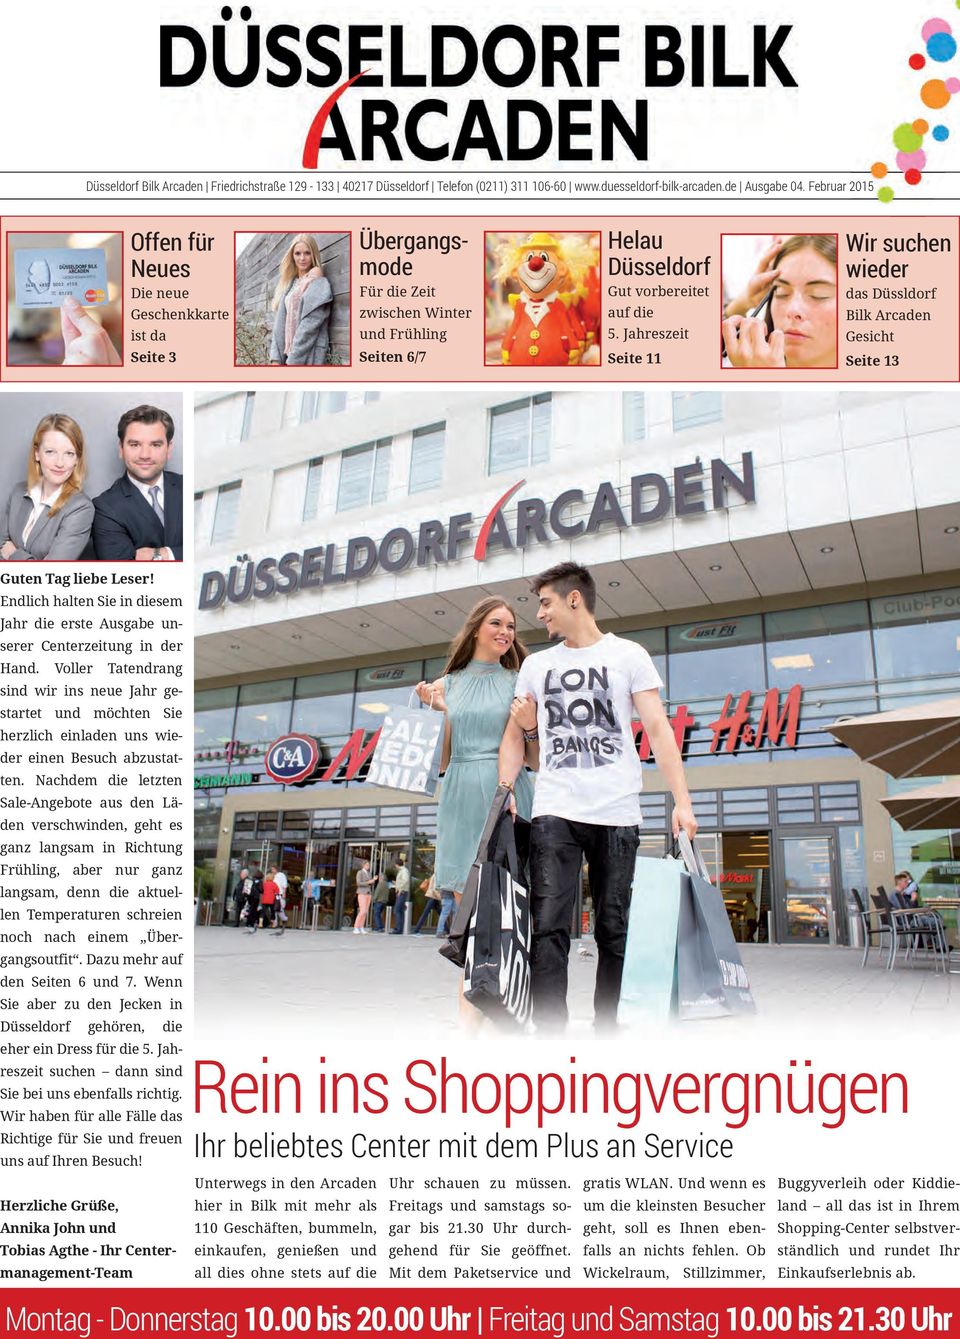 Jahreszeit Seite 11 Wir suchen wieder das Düssldorf Bilk Arcaden Gesicht Seite 13 Guten Tag liebe Leser! Endlich halten Sie in diesem Jahr die erste Ausgabe unserer Centerzeitung in der Hand.